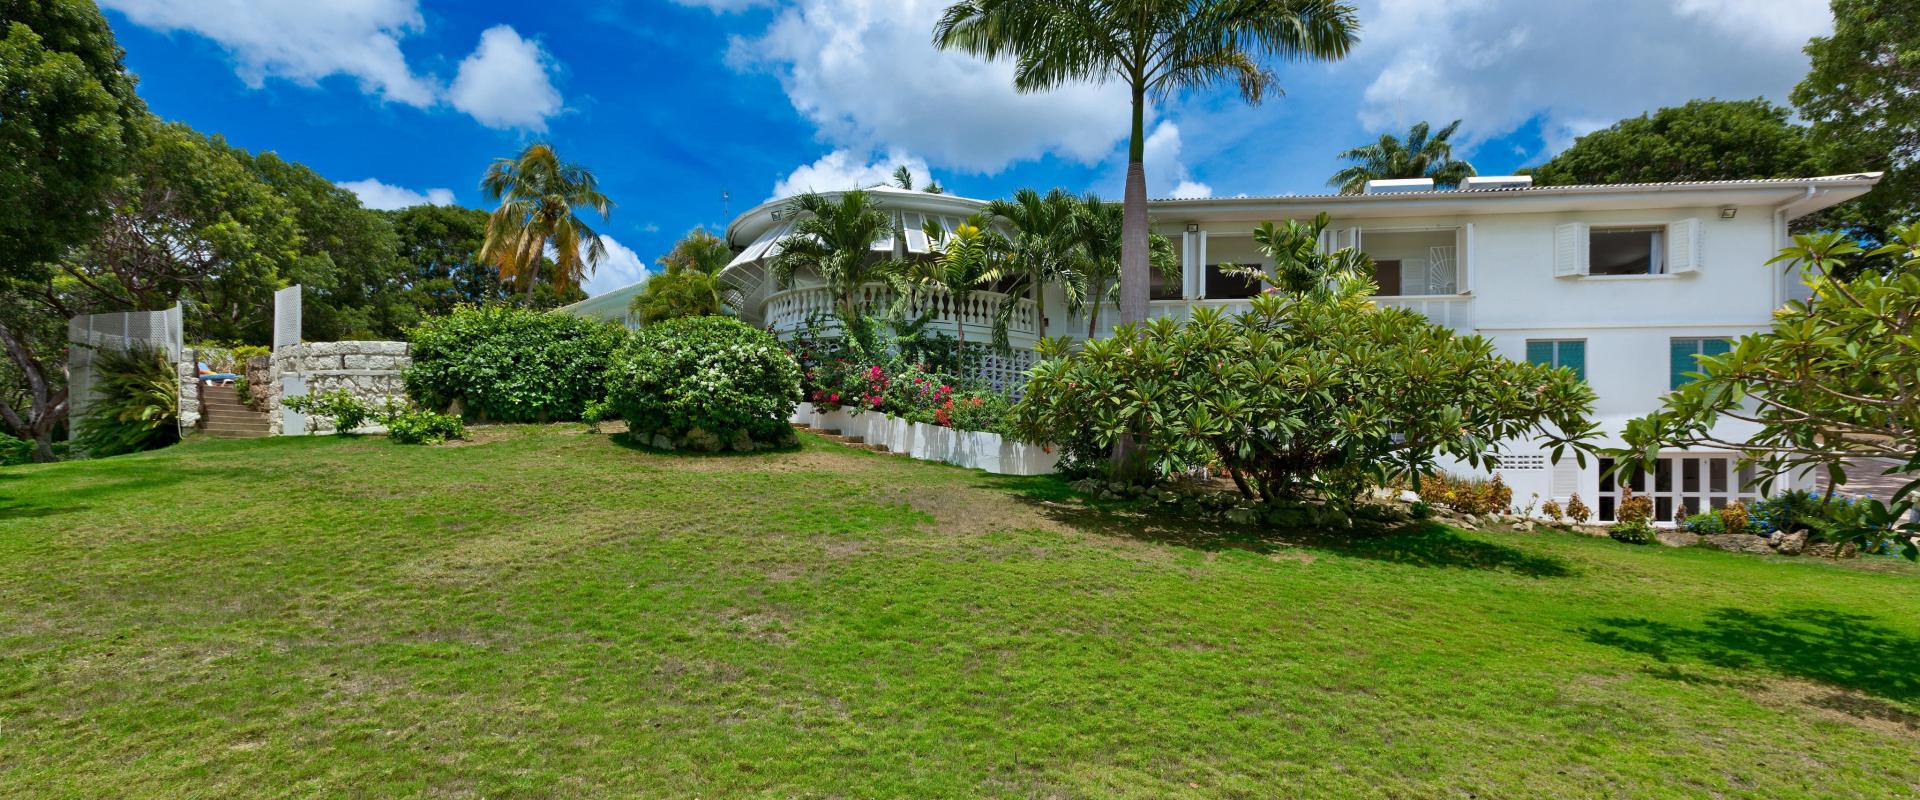 Sandy Lane Holiday Villa Barbados Halle Rose Gardens Towards Golf Course